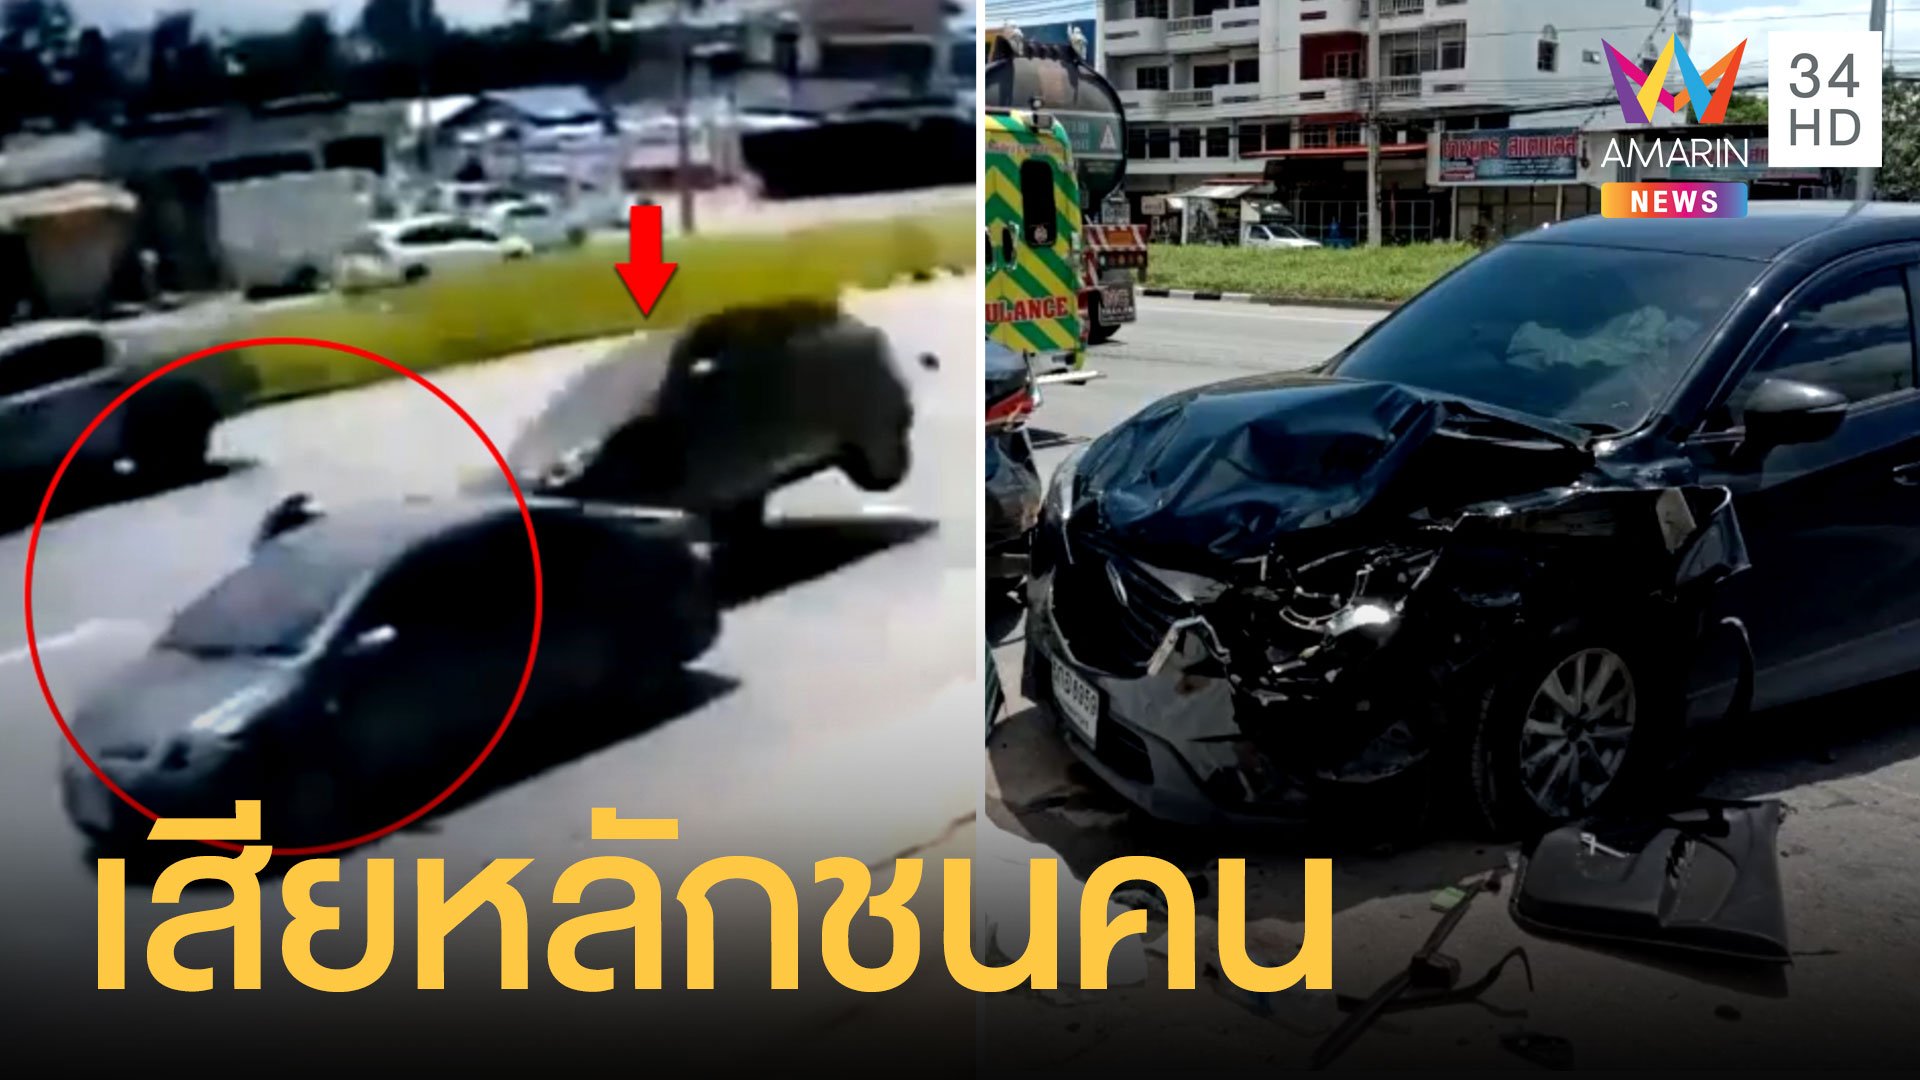 เก๋งเสียหลักชนรถ หญิงสาวกำลังเปิดประตูกระเด็นดับคาที่ | ข่าวเที่ยงอมรินทร์ | 6 ก.ย. 63 | AMARIN TVHD34